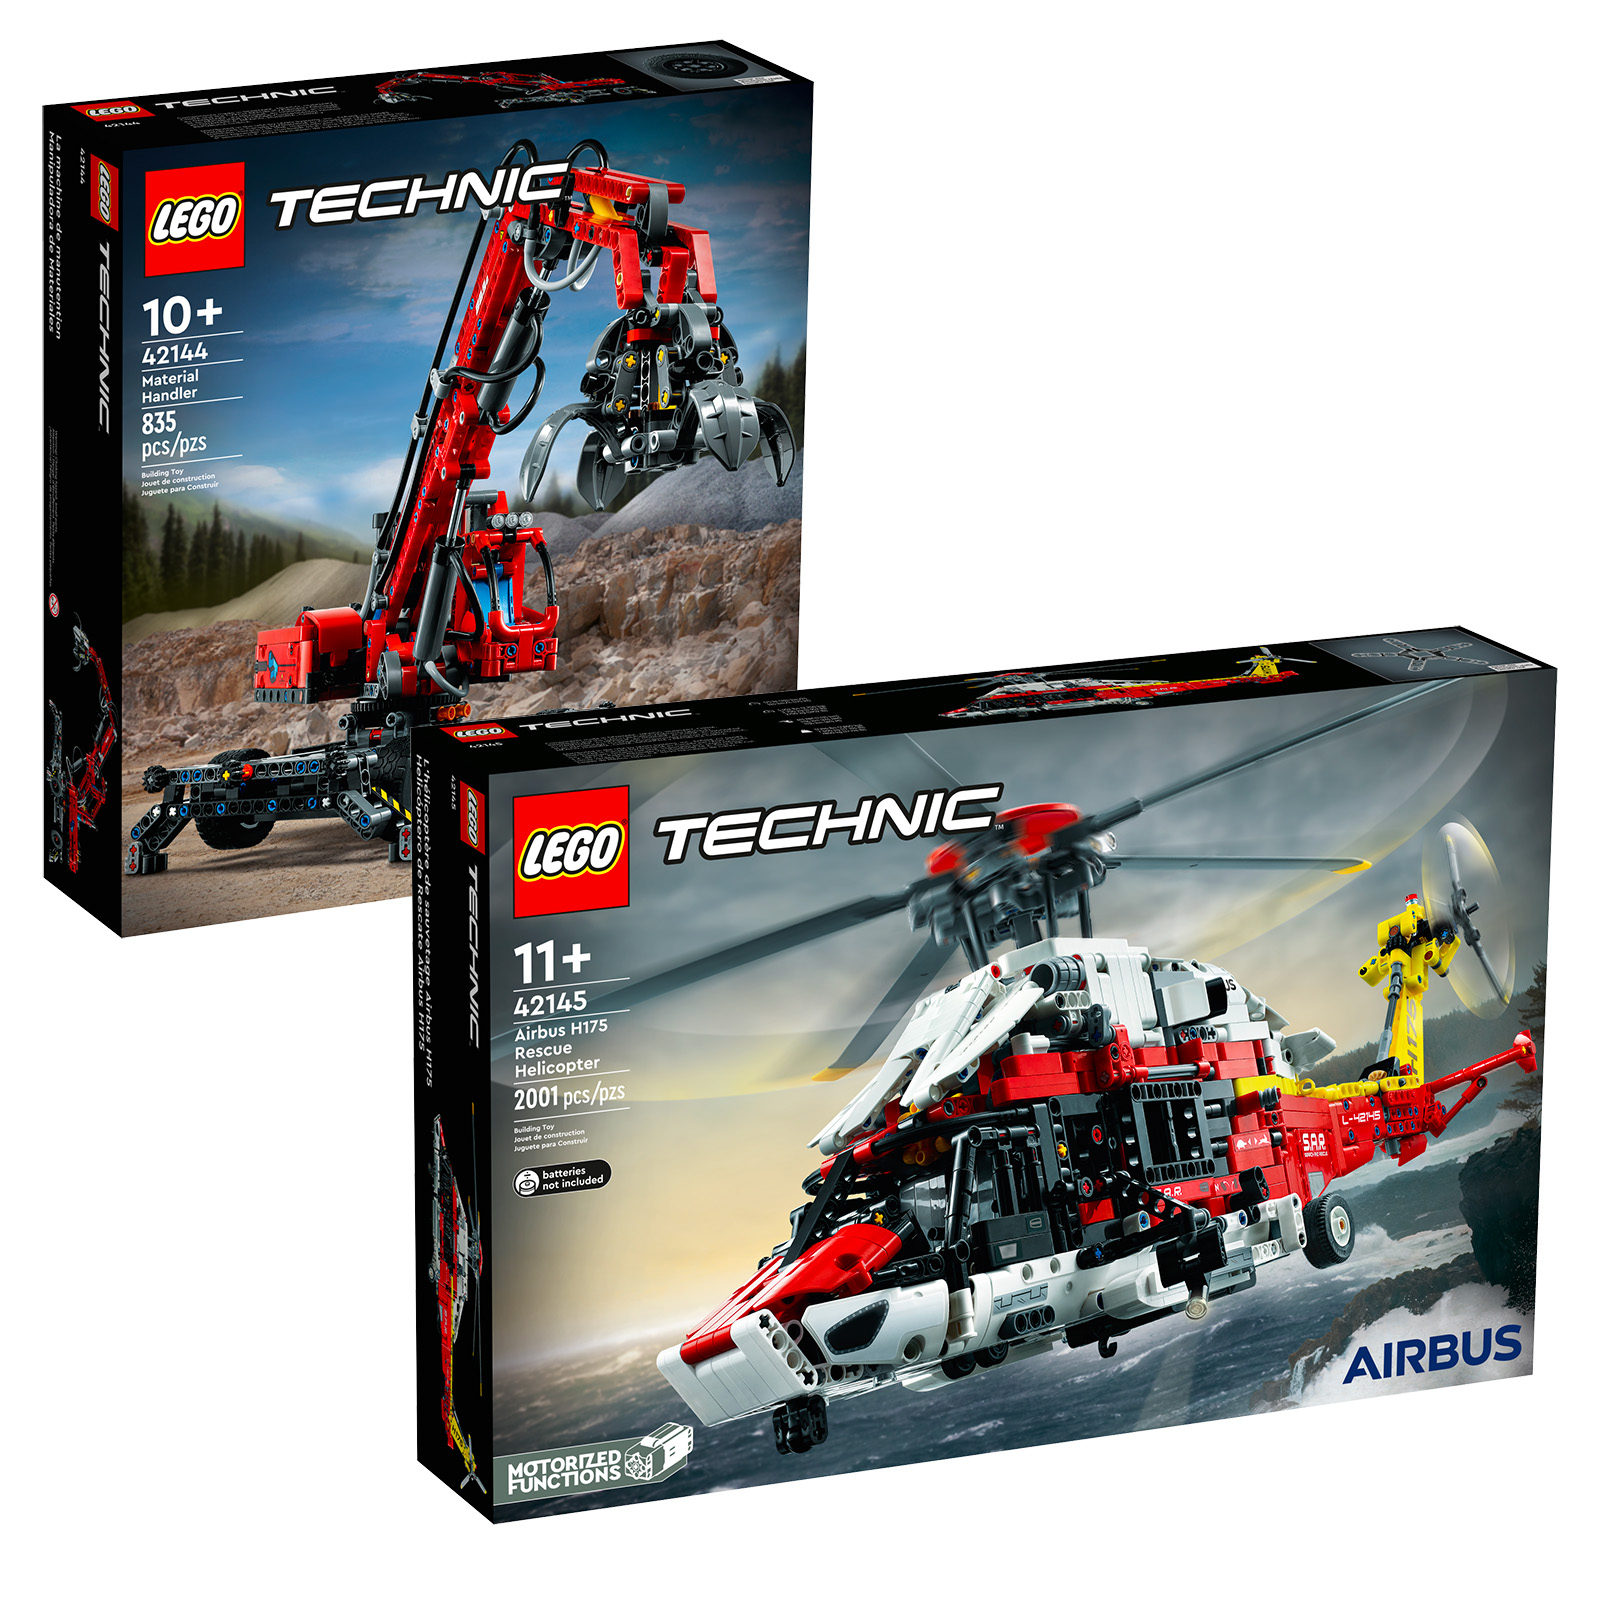 Nel negozio LEGO: i set per l'handler di materiali LEGO Technic 42144 e l'elicottero di soccorso Airbus H42145 175 sono online